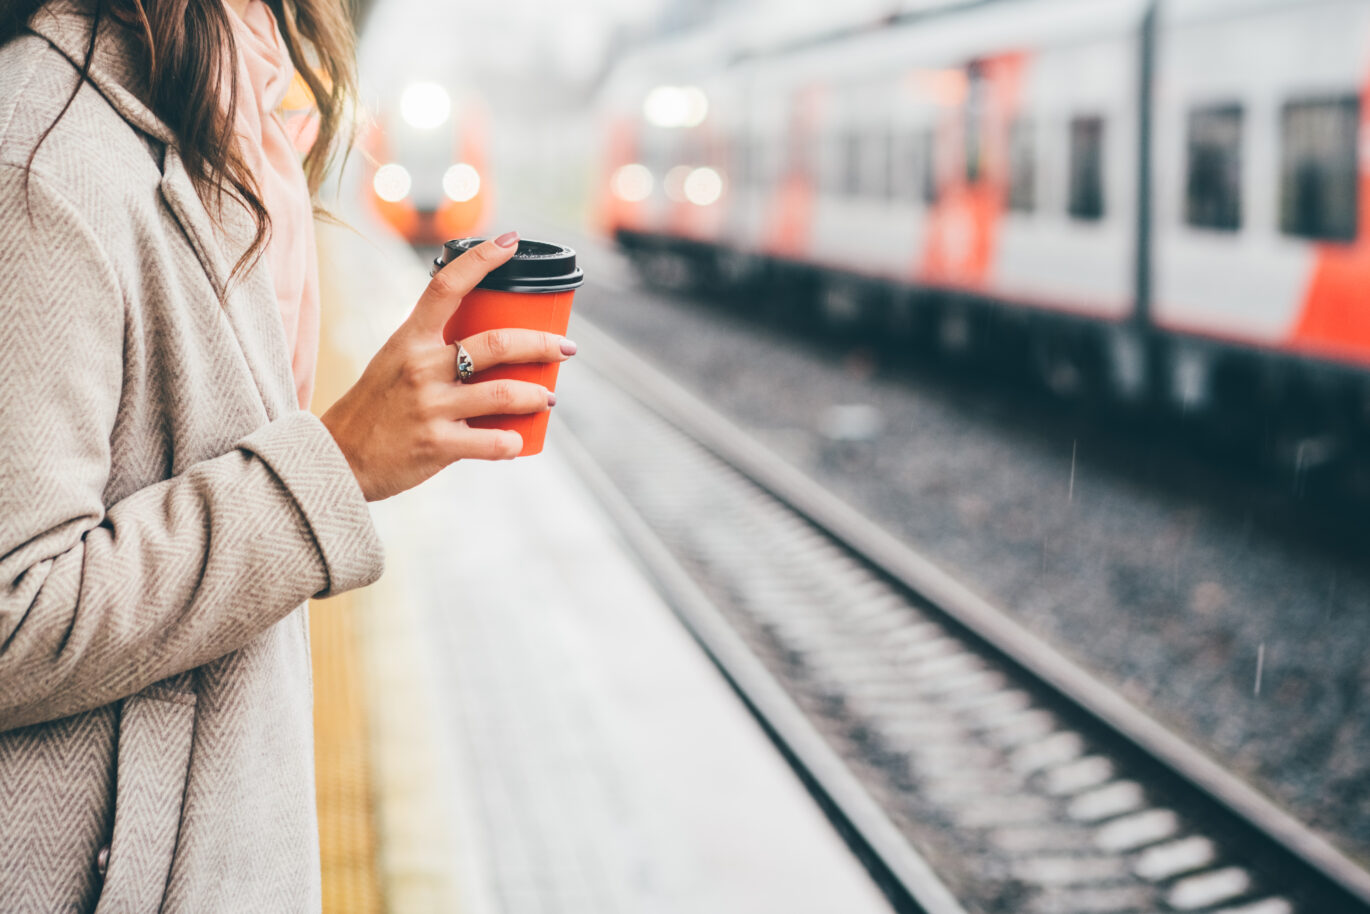 Een vrouw die een rode koffie to go beker vasthoudt terwijl ze staat te wachten op de trein